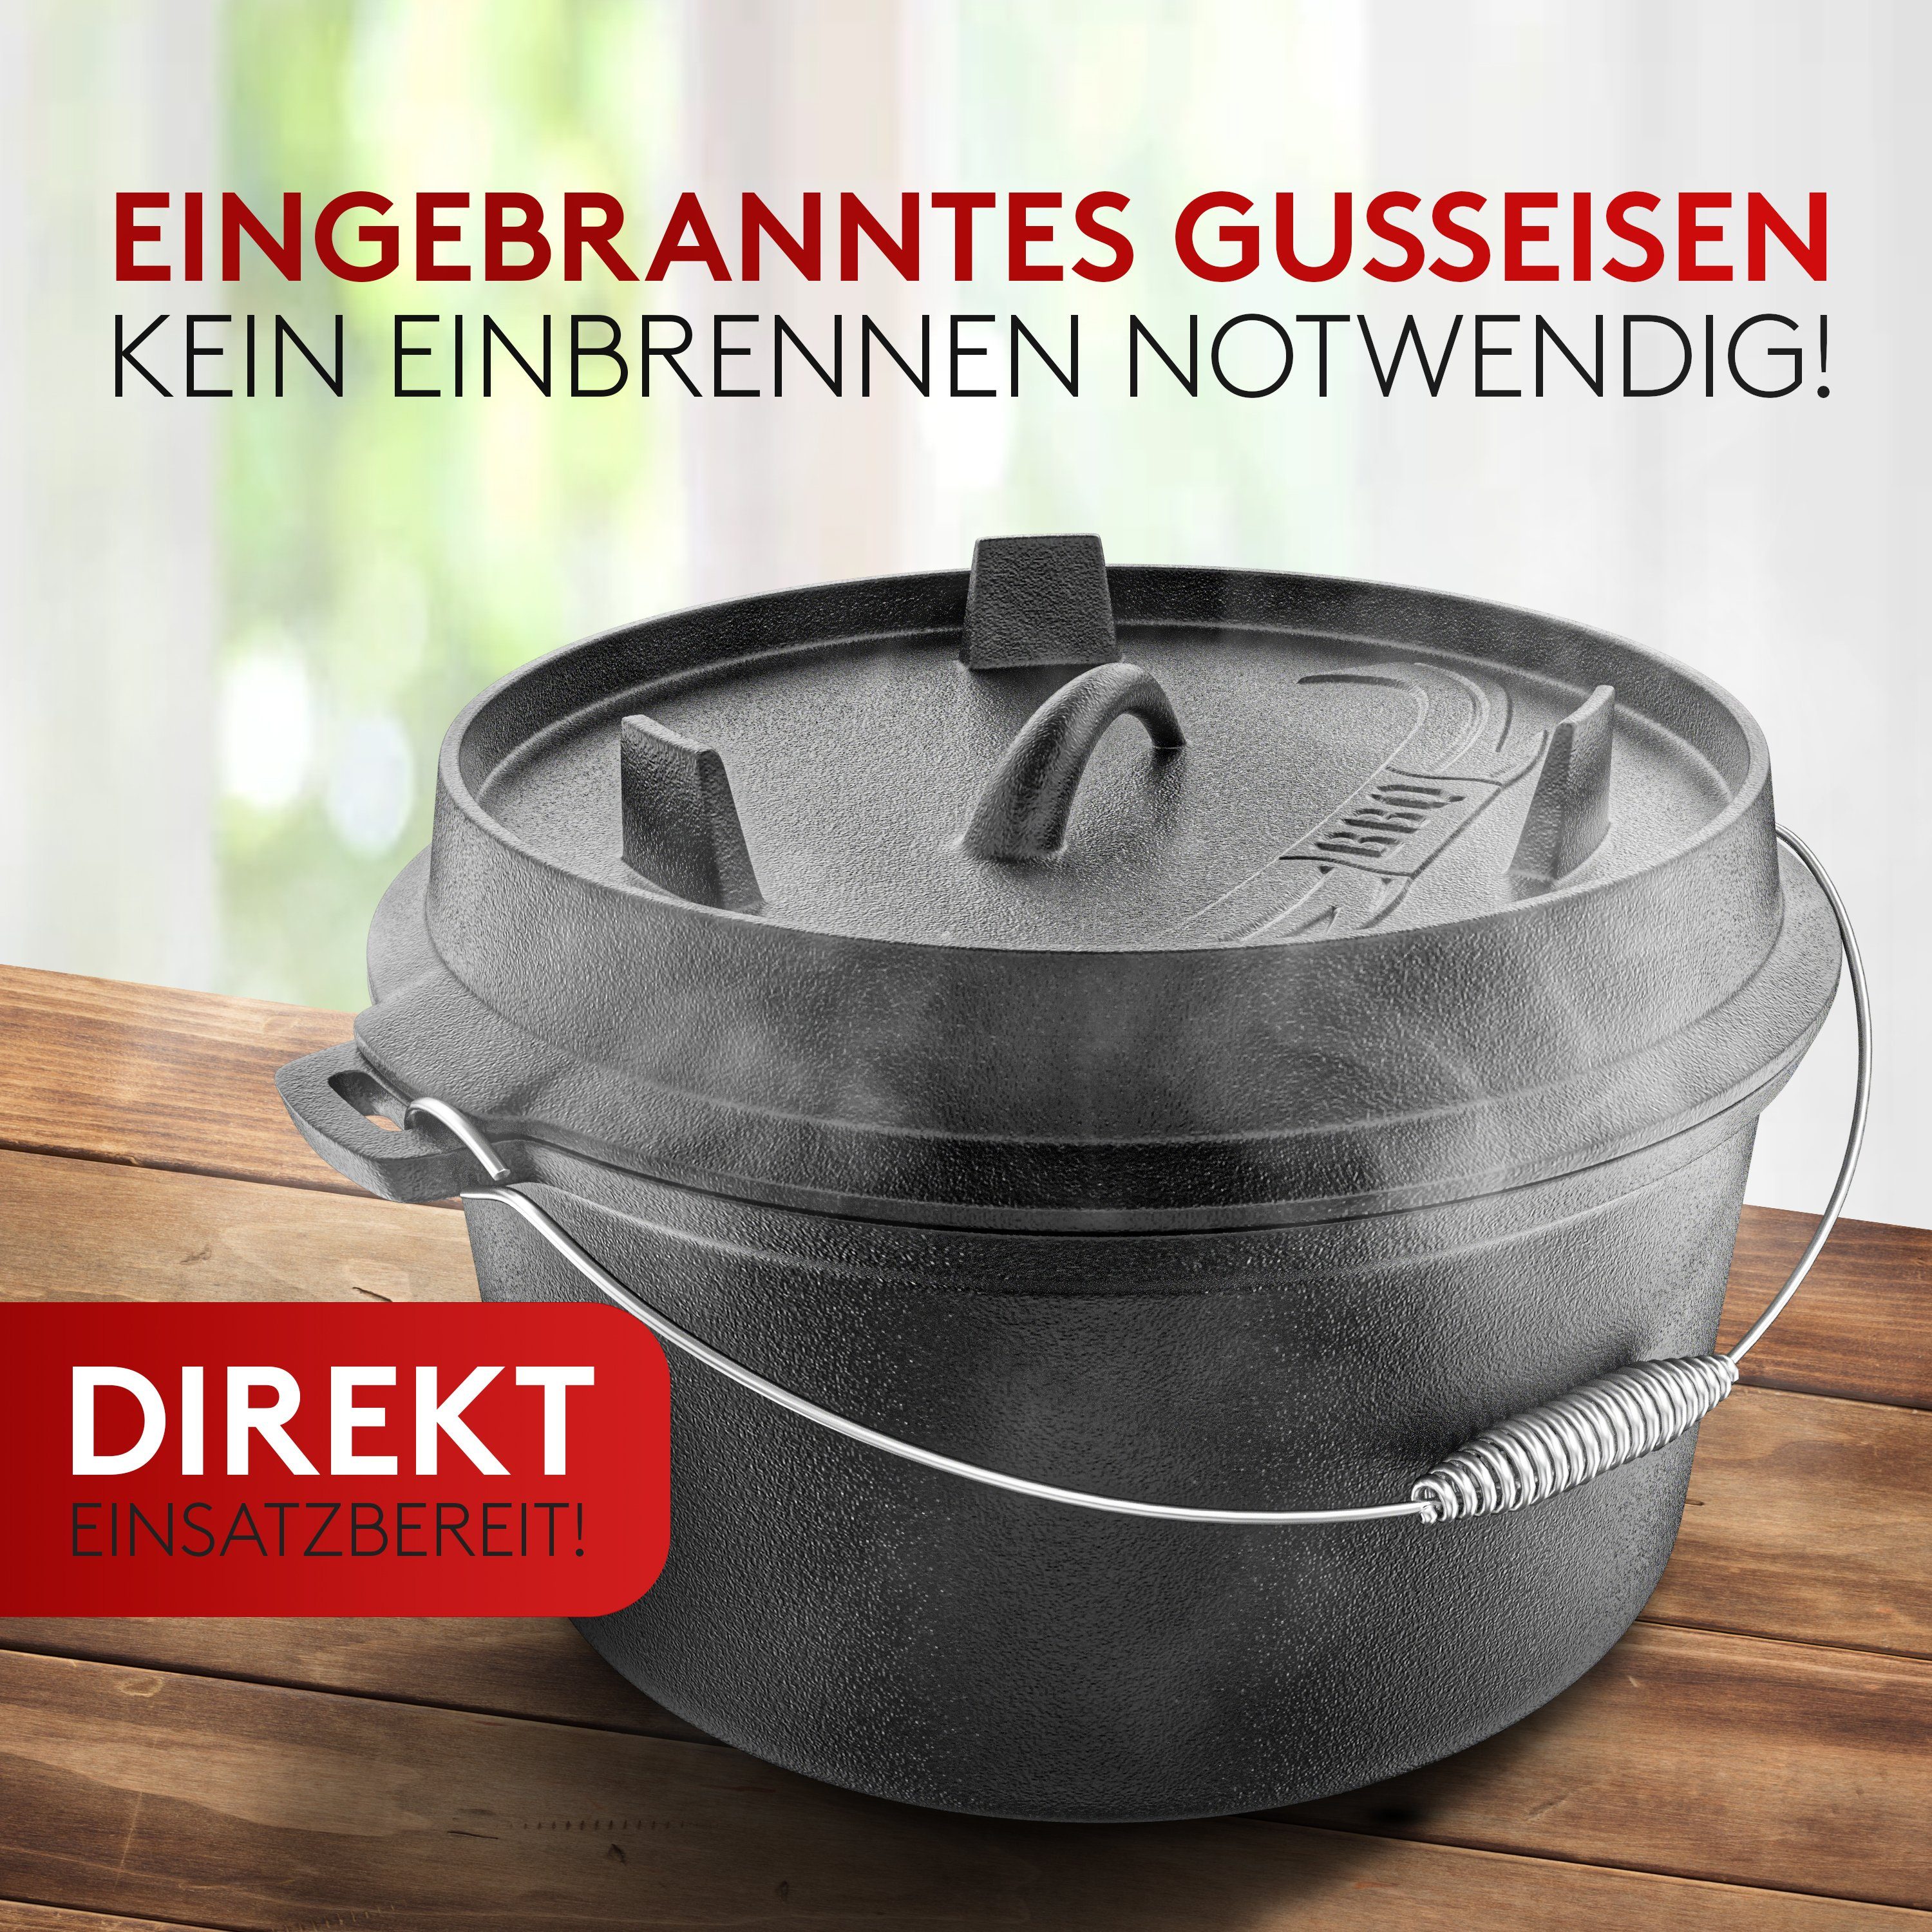 Für - Original] Edelstahl [7L] BBQ [Das Dutch Dutch Induktion, - Amandi Feuertopf Set Oven Gusseisen, Oven